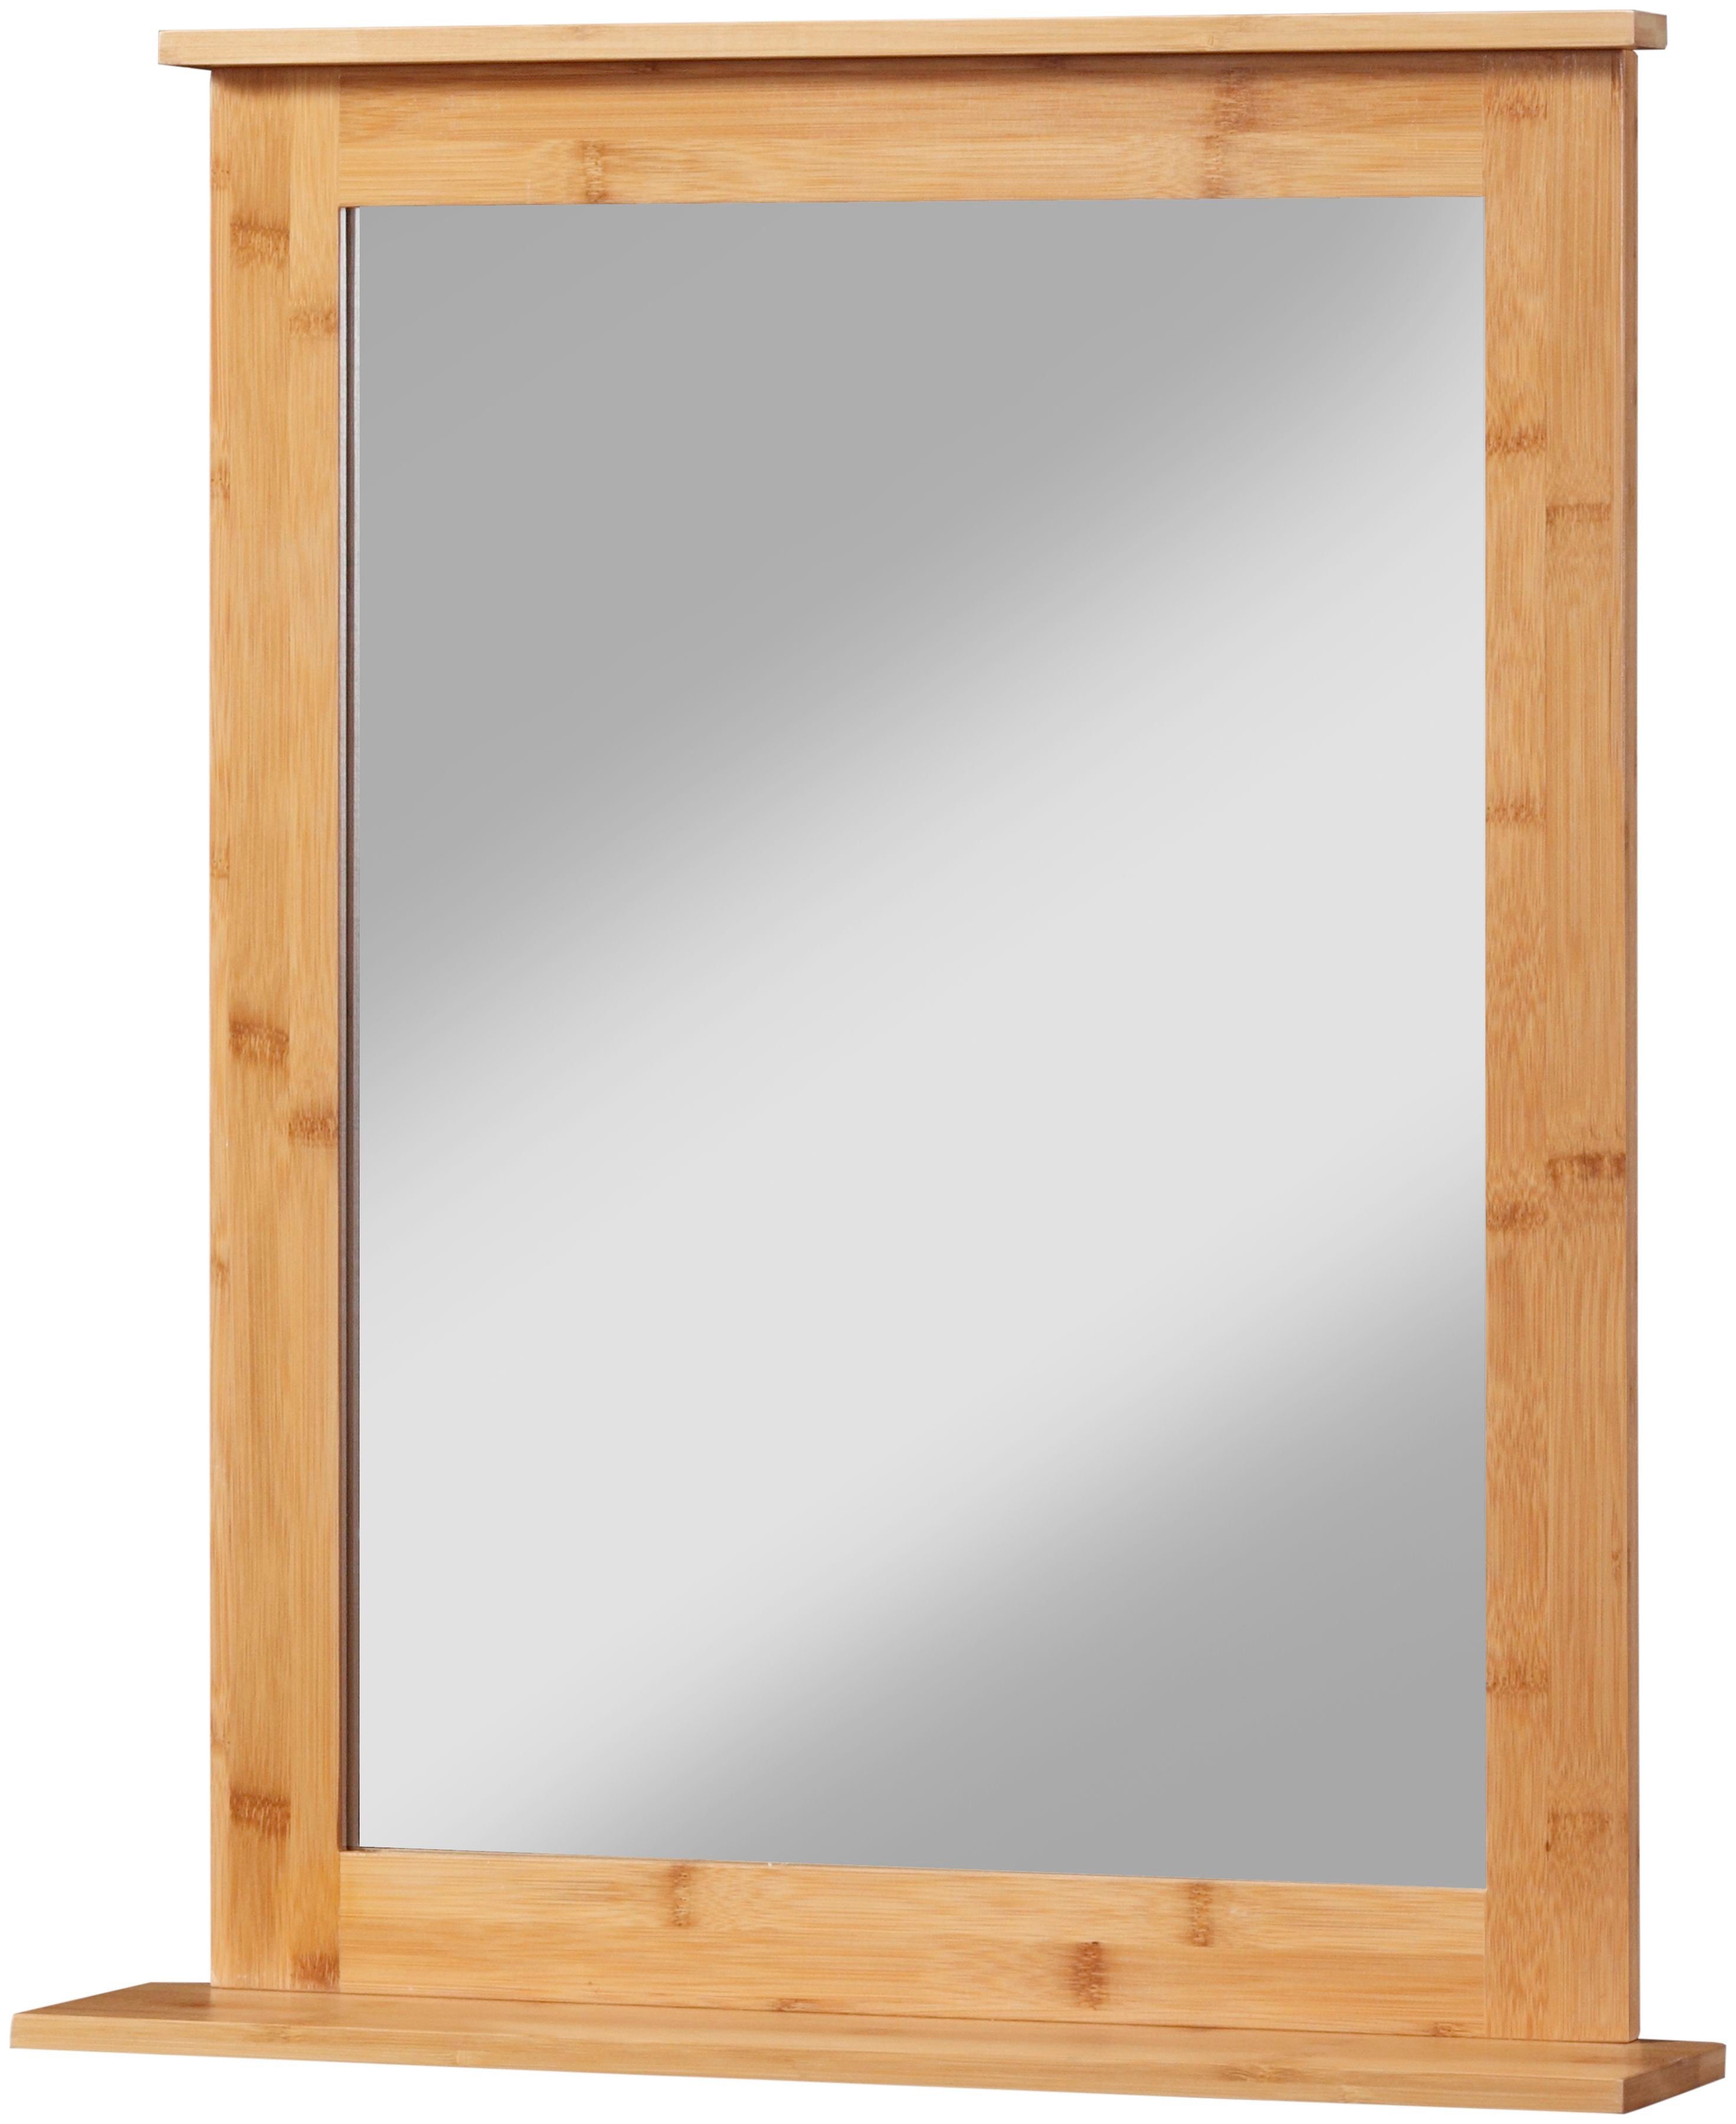 welltime Badspiegel Bambus New, Badezimmerspiegel mit Bambus-Rahmen, eckig 58x70cm | Badspiegel